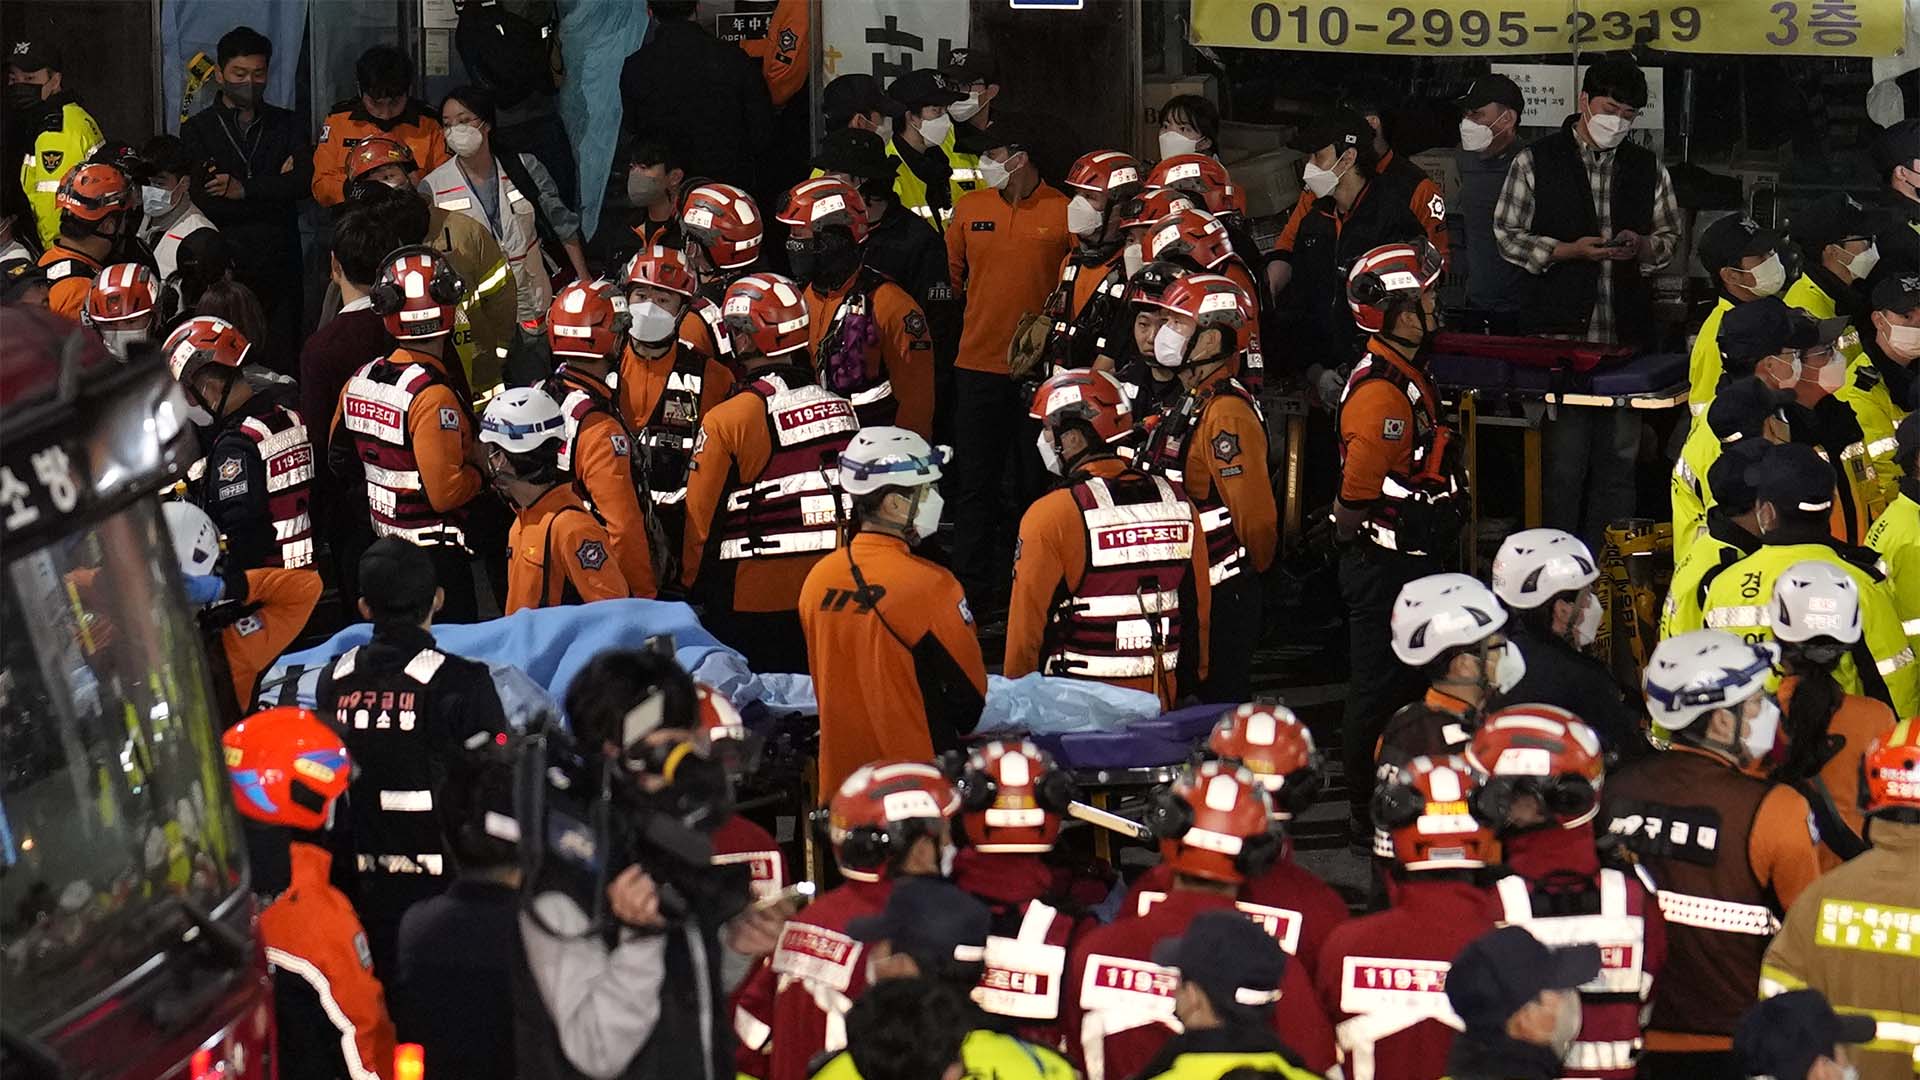 Des centaines de personnes ont été tuées et d'autres ont été blessées après avoir été écrasées par une grande foule qui se pressait dans une rue étroite lors des festivités d'Halloween à Séoul